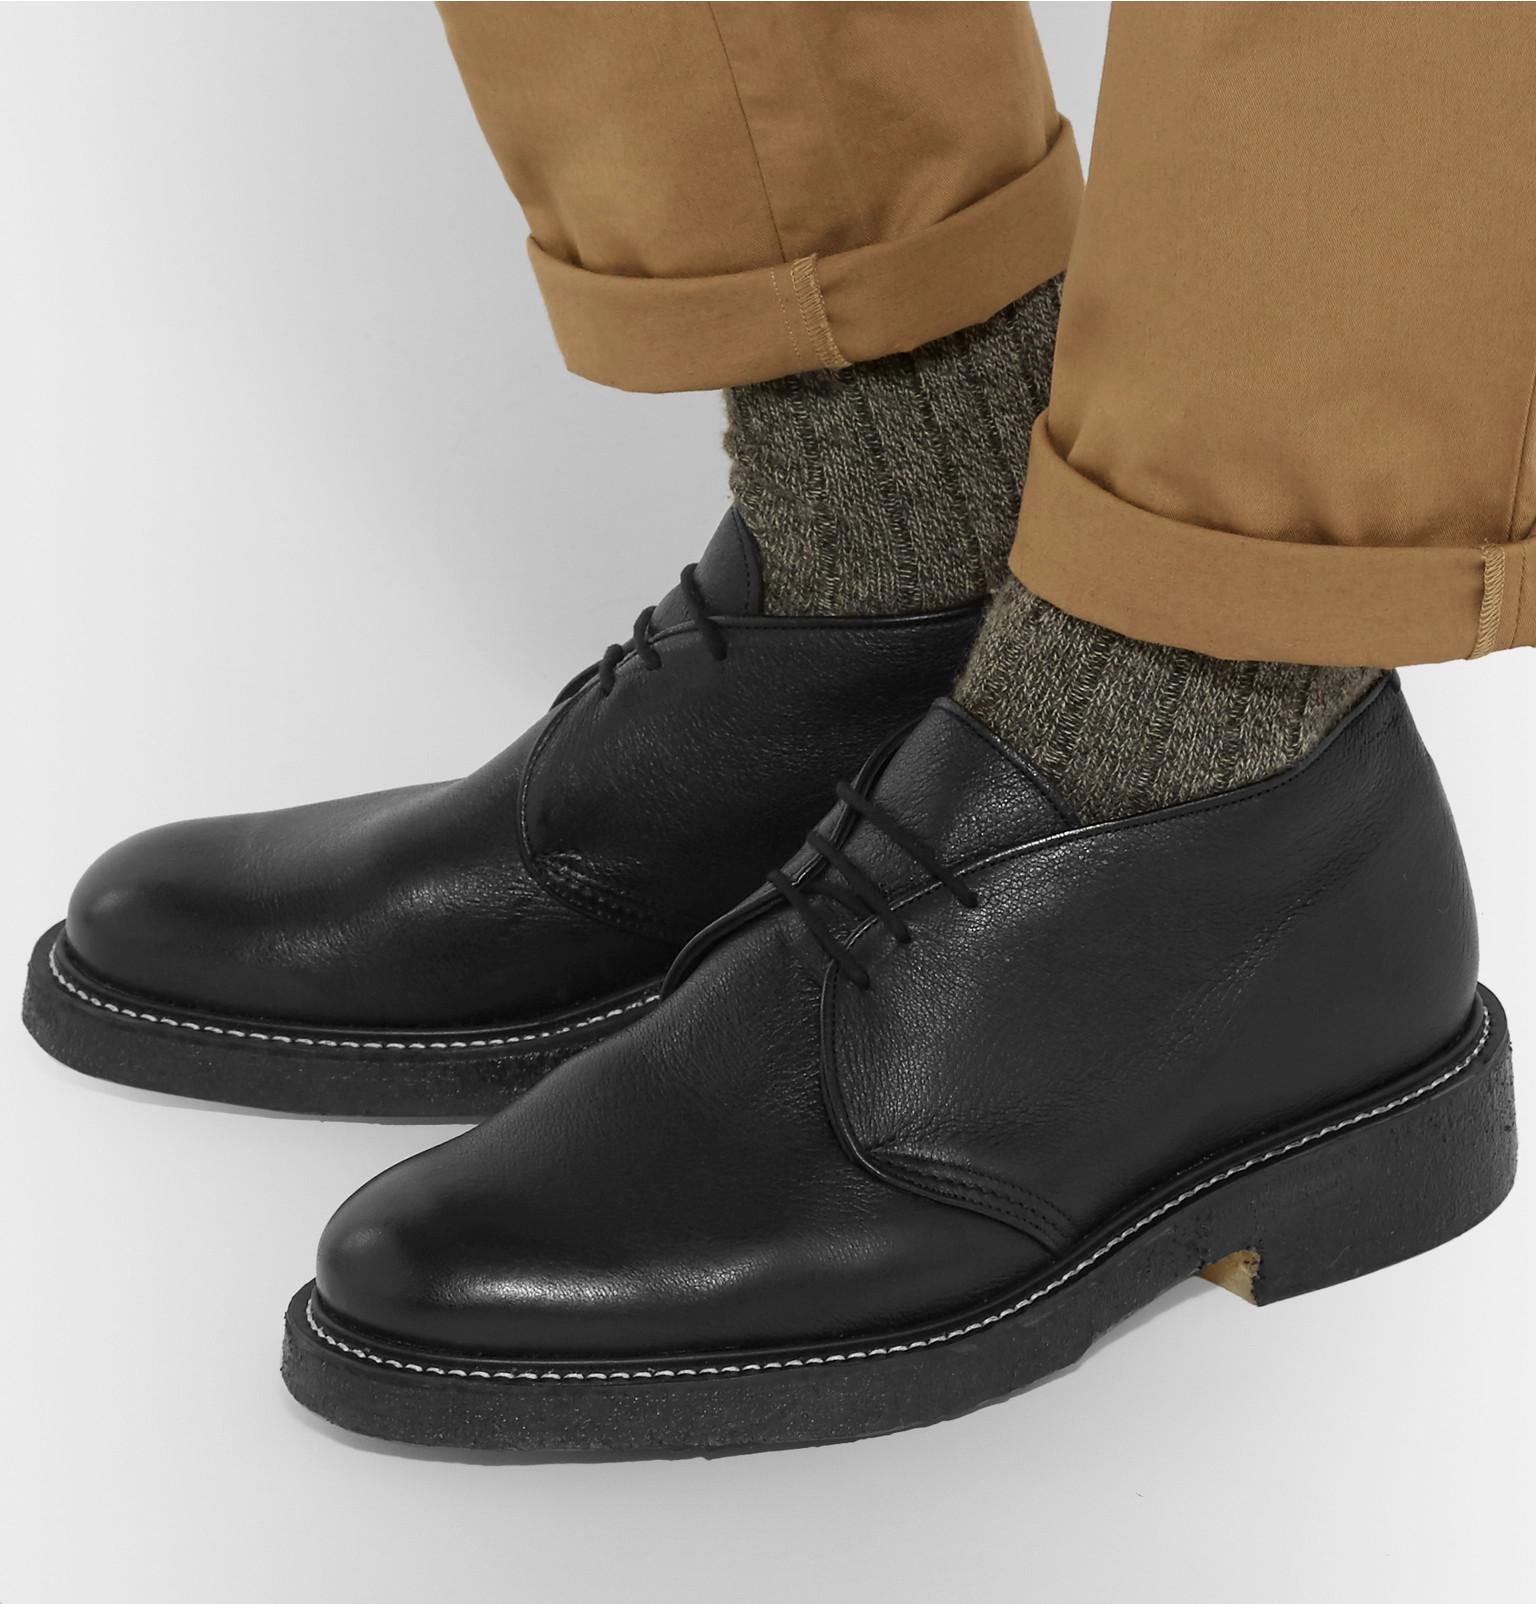 Winston Textured-leather Chukka Boots 